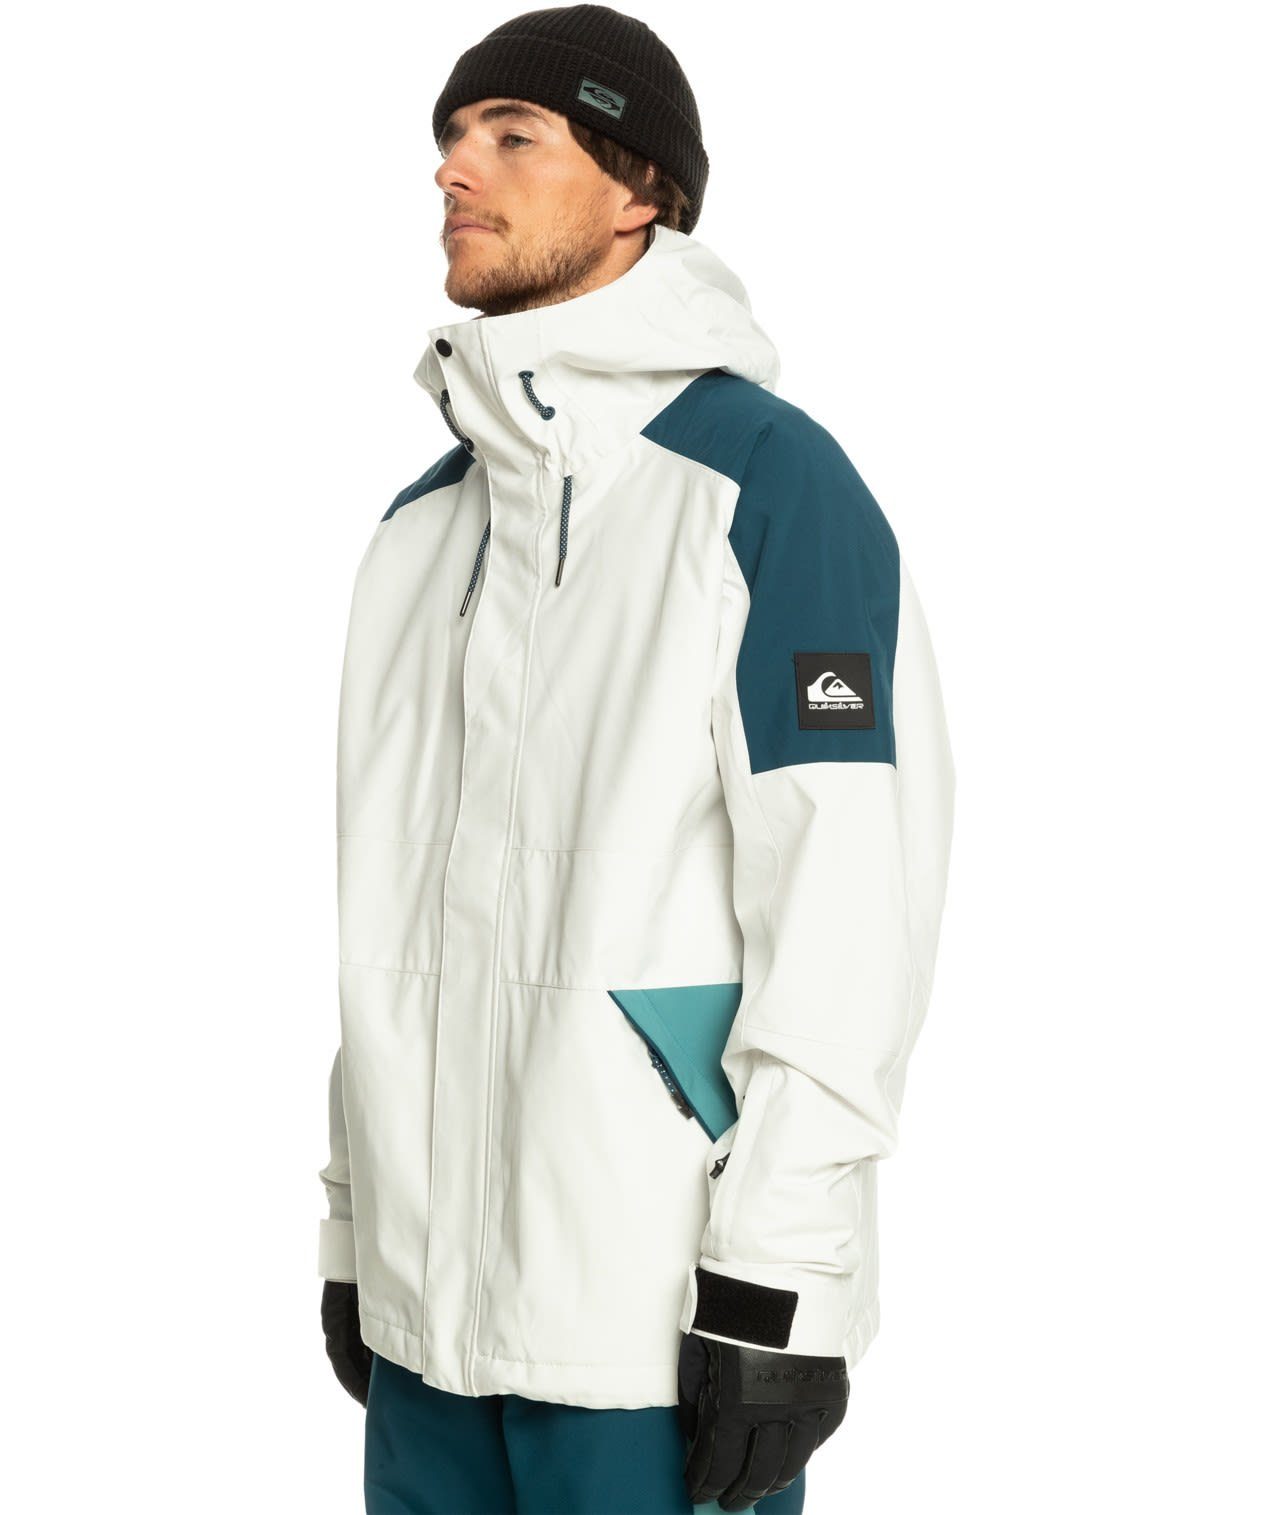 Quiksilver Quiksilver Herren & Ski- Radicalo Jacket M Skijacke